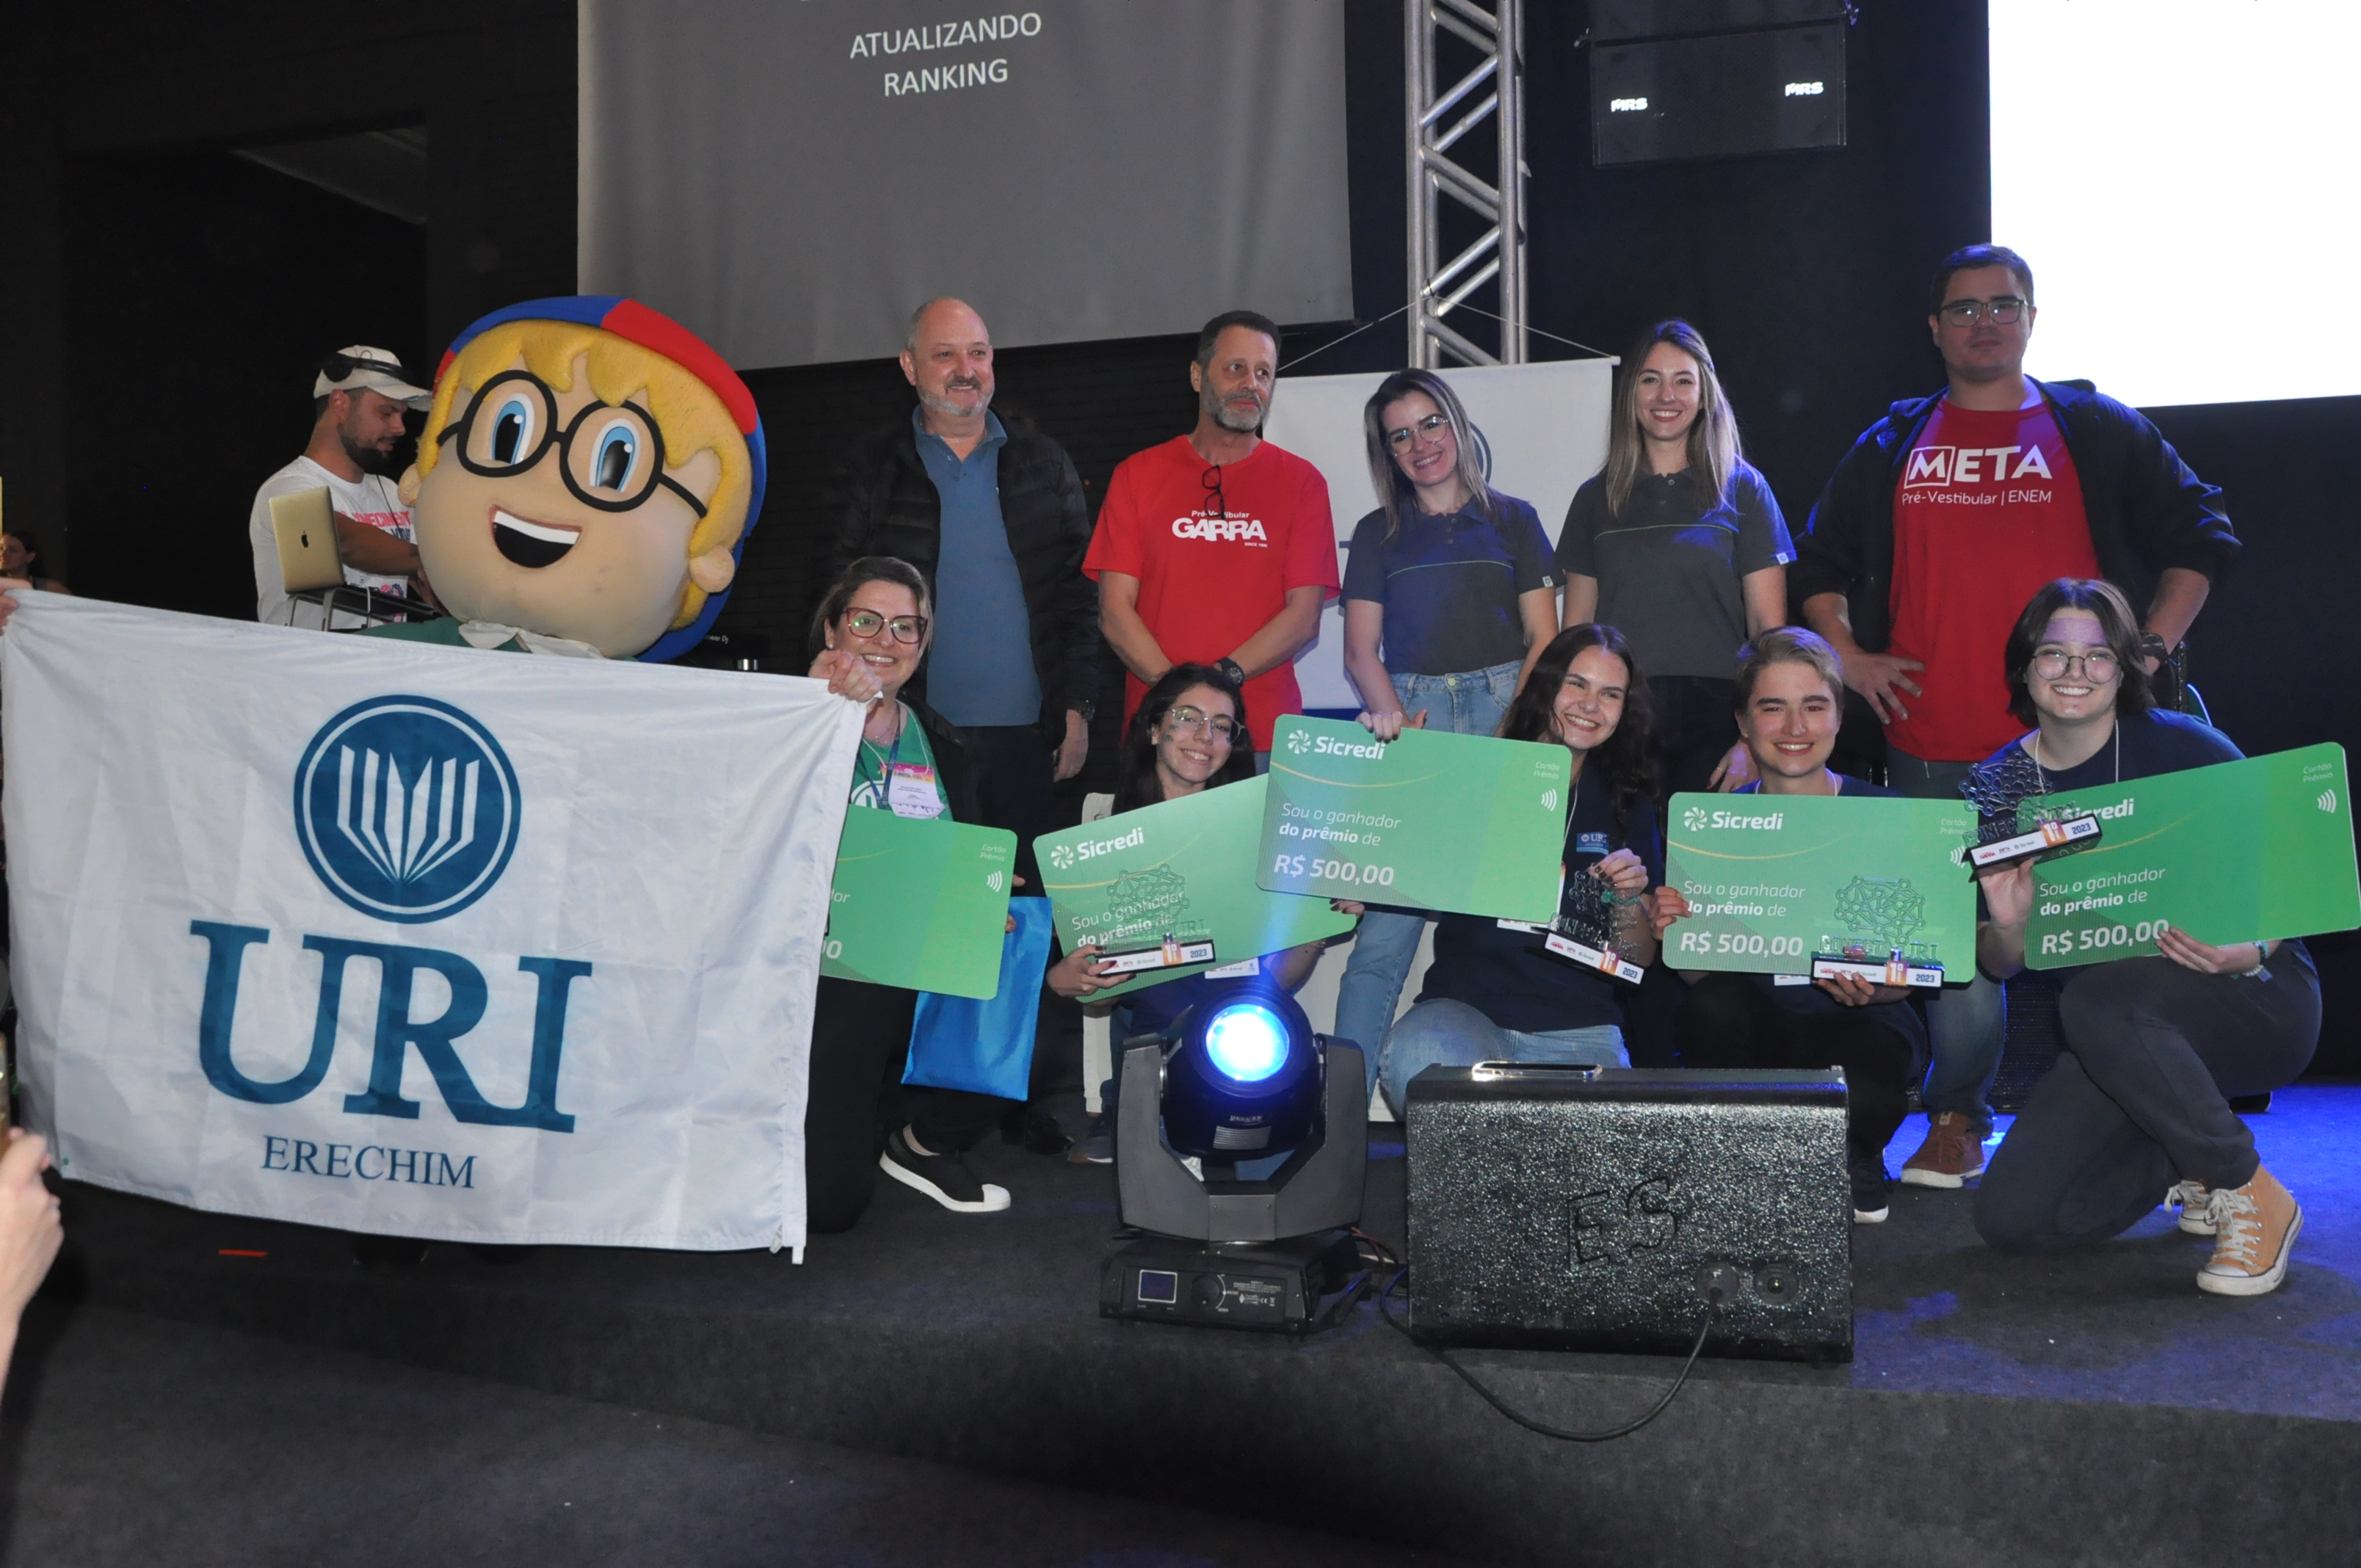 Equipe URI 2, da Escola Básica da URI, foi a vencedora do CONECTA URI